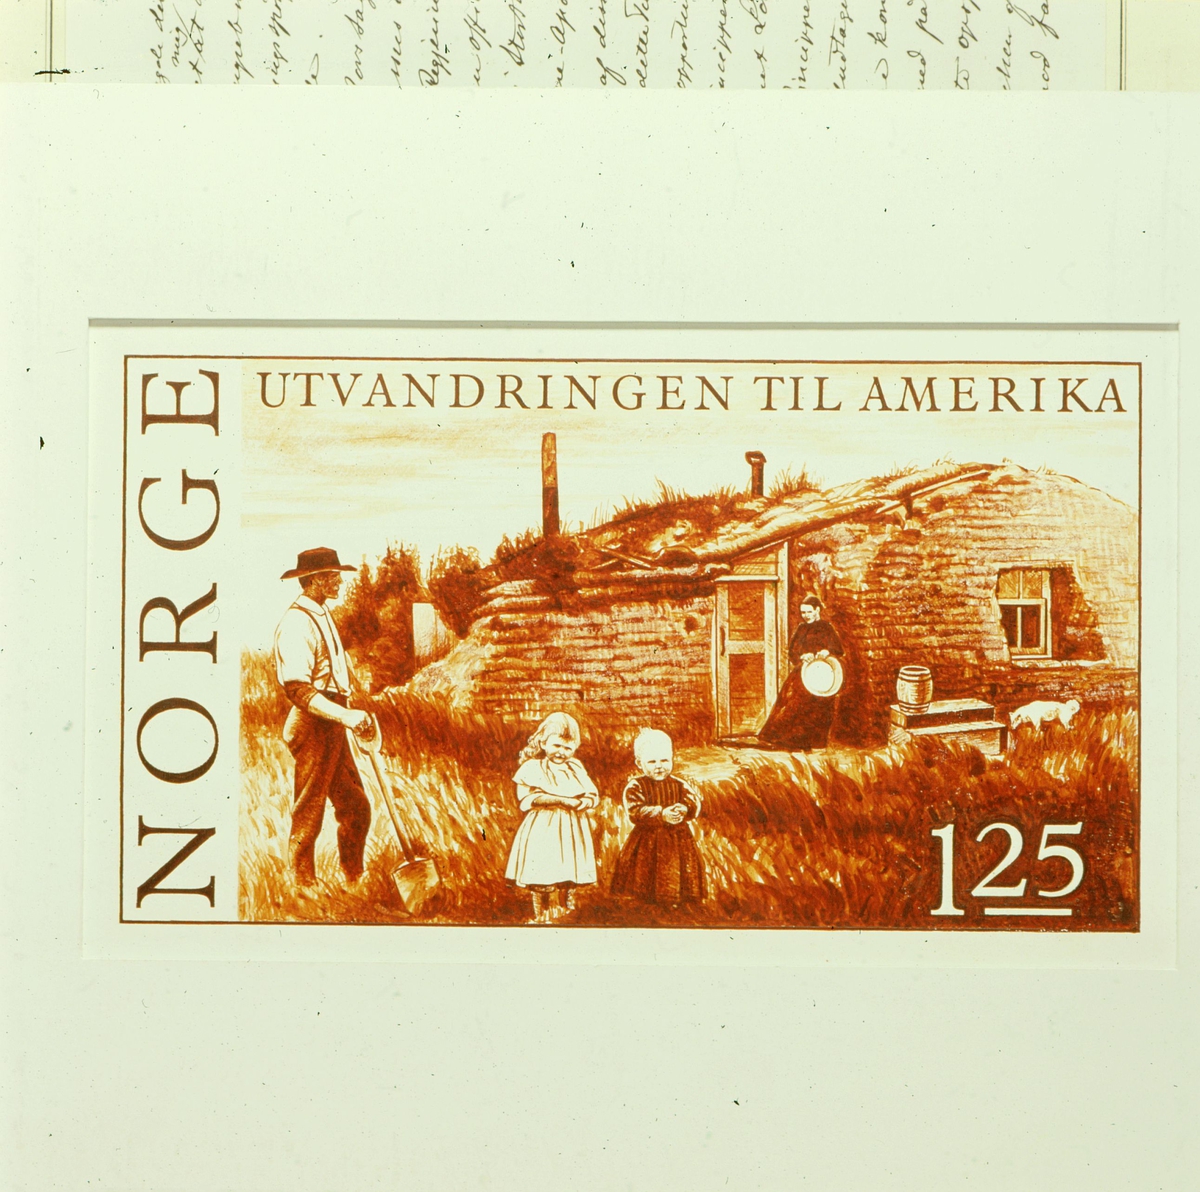 postmuseet, Kirkegata 20, frimerker, NK 755, 150-årsminnet for utvandringen til Amerika, nybyggerfamilie